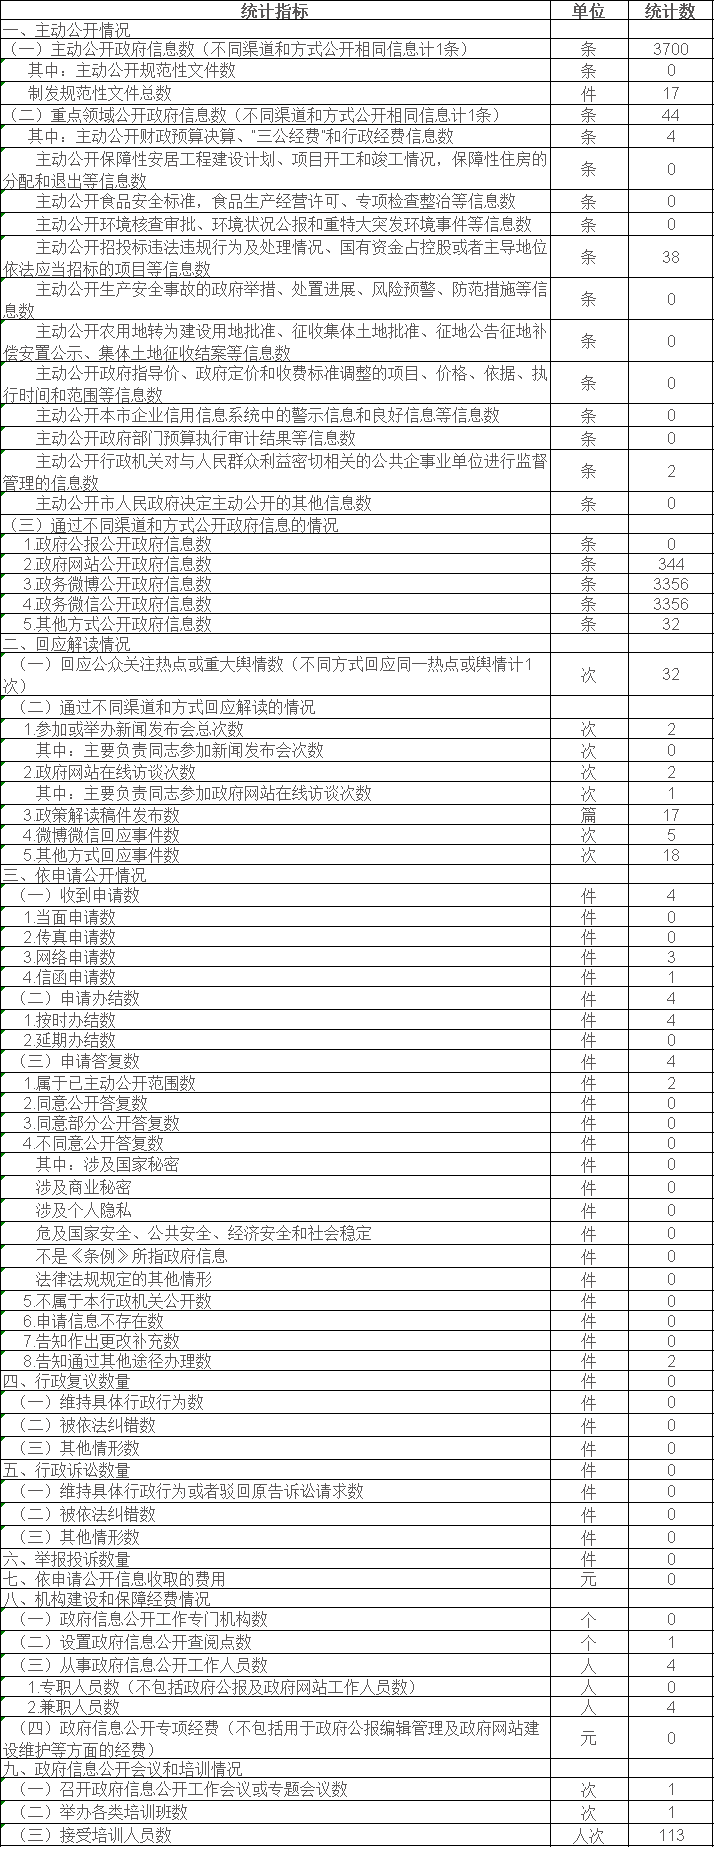  北京市气象部门政府信息公开情况统计表